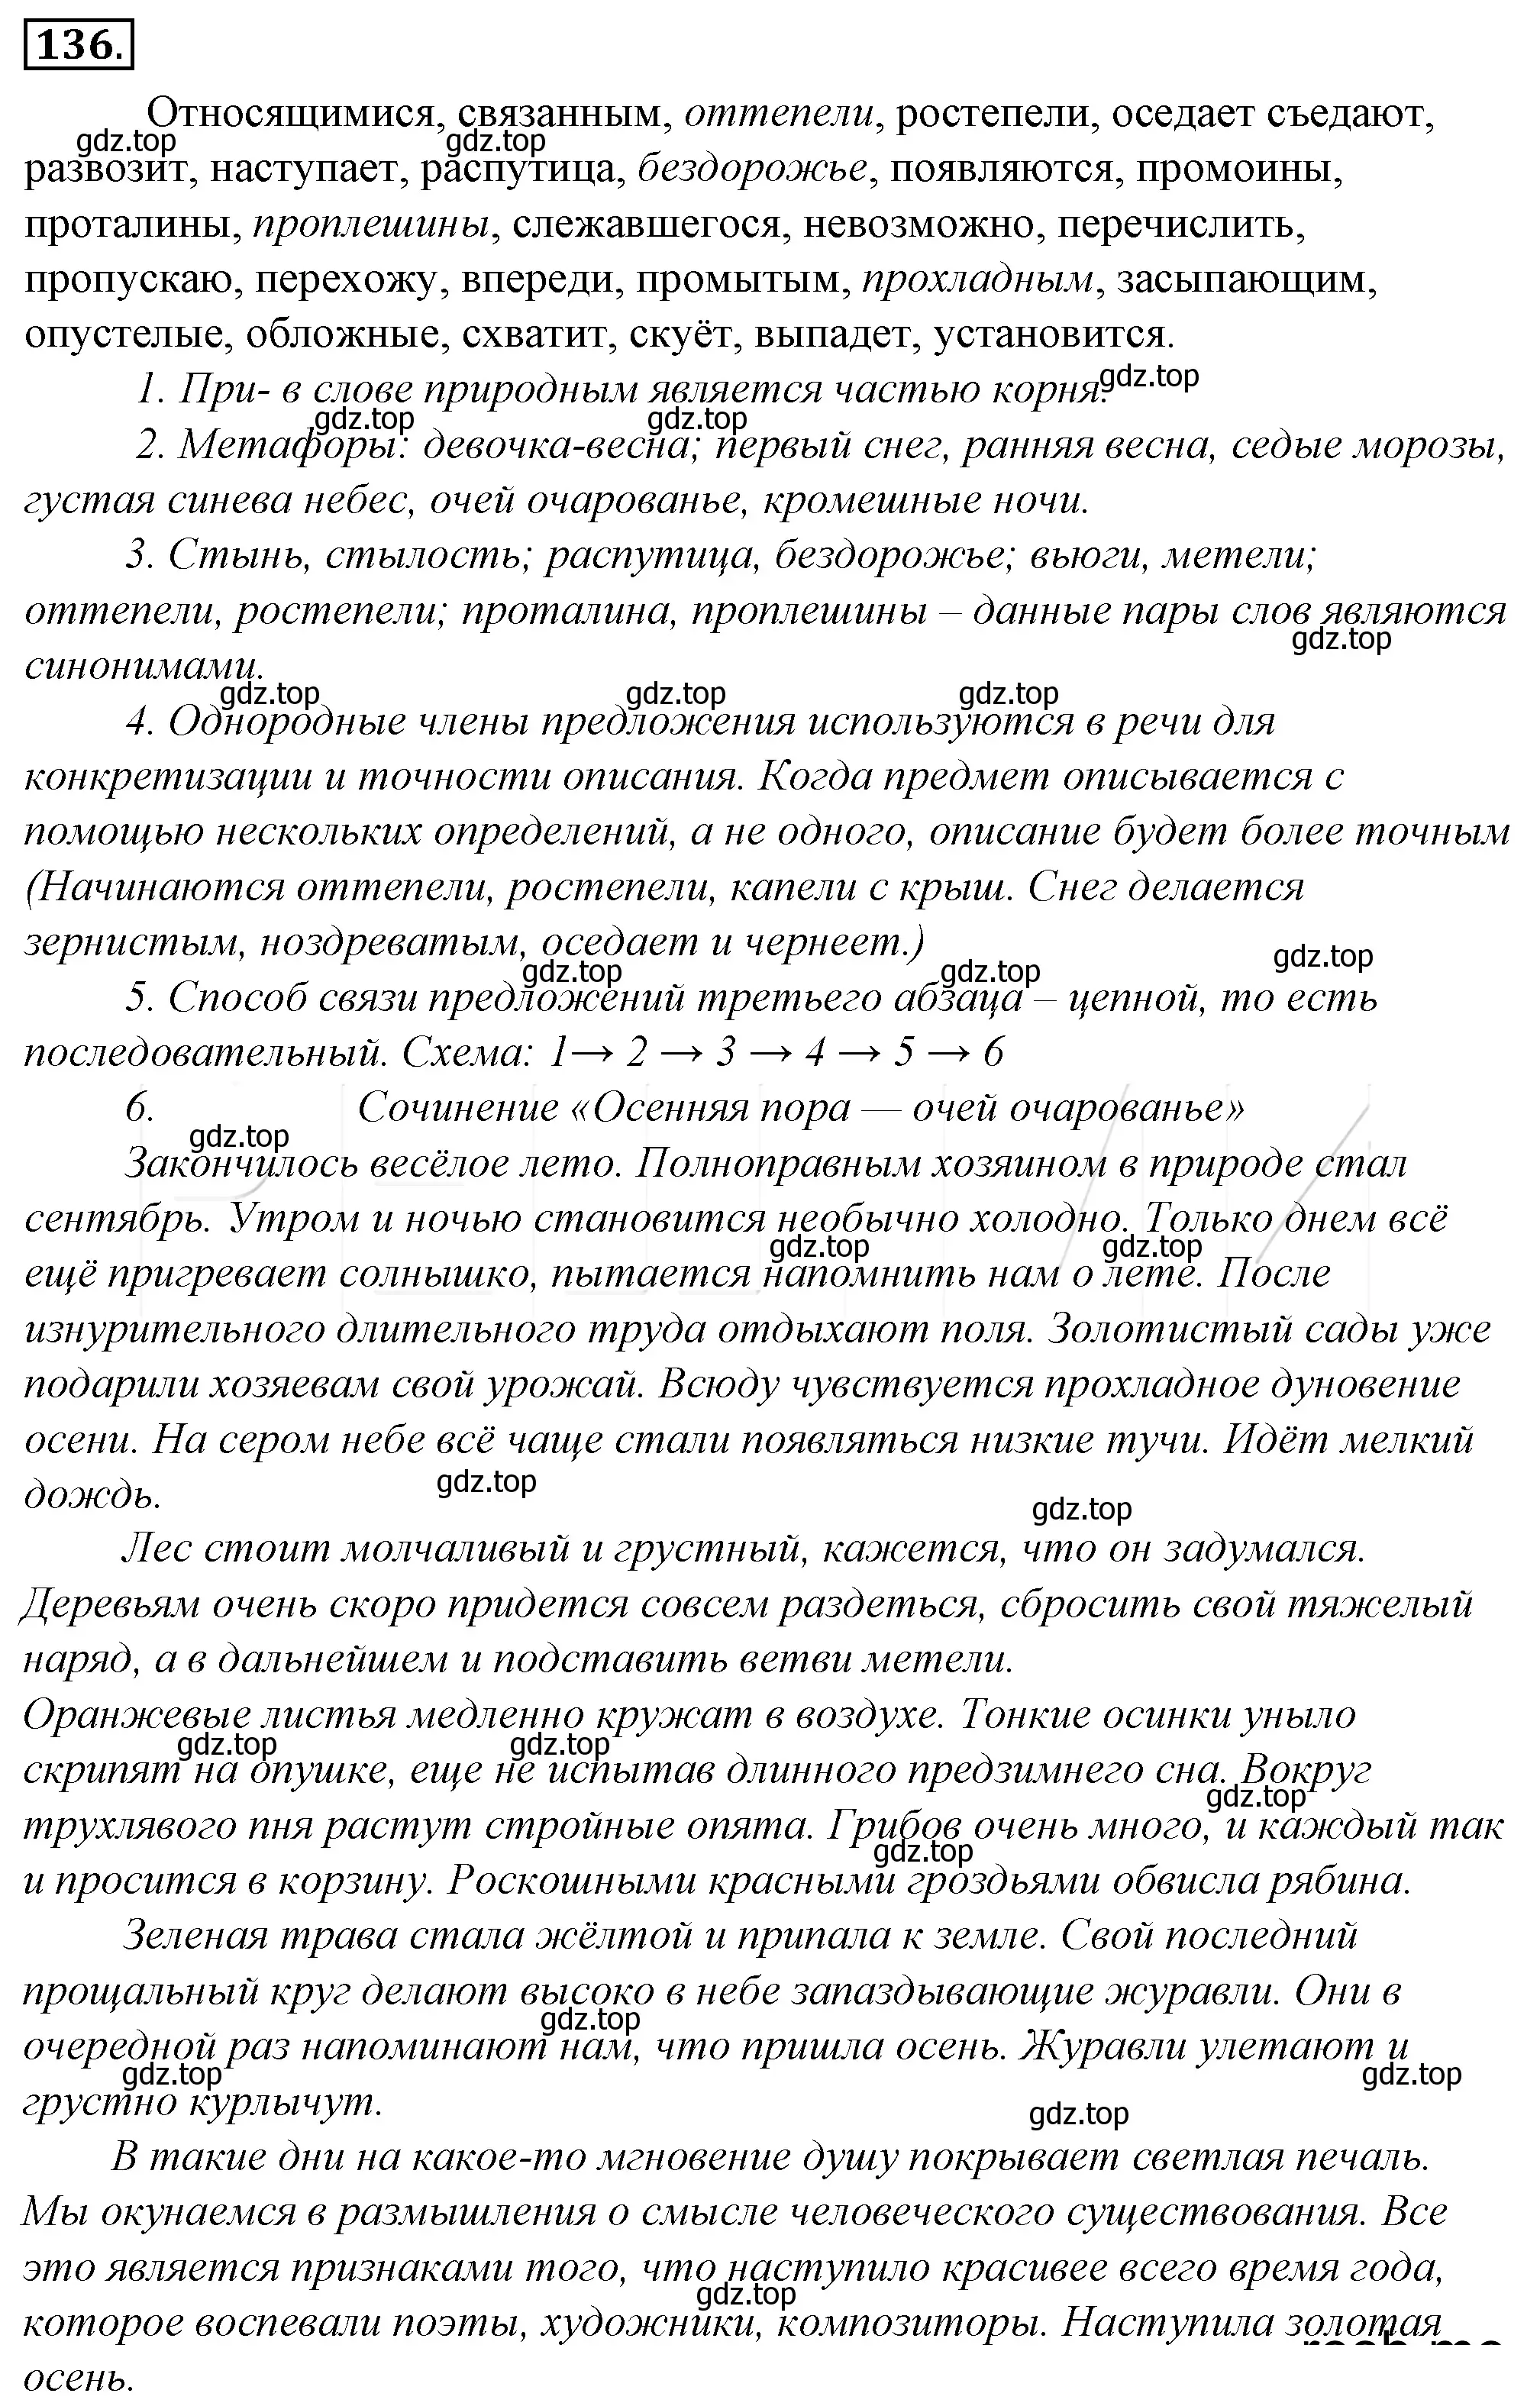 Решение 4. номер 160 (страница 146) гдз по русскому языку 10-11 класс Гольцова, Шамшин, учебник 1 часть